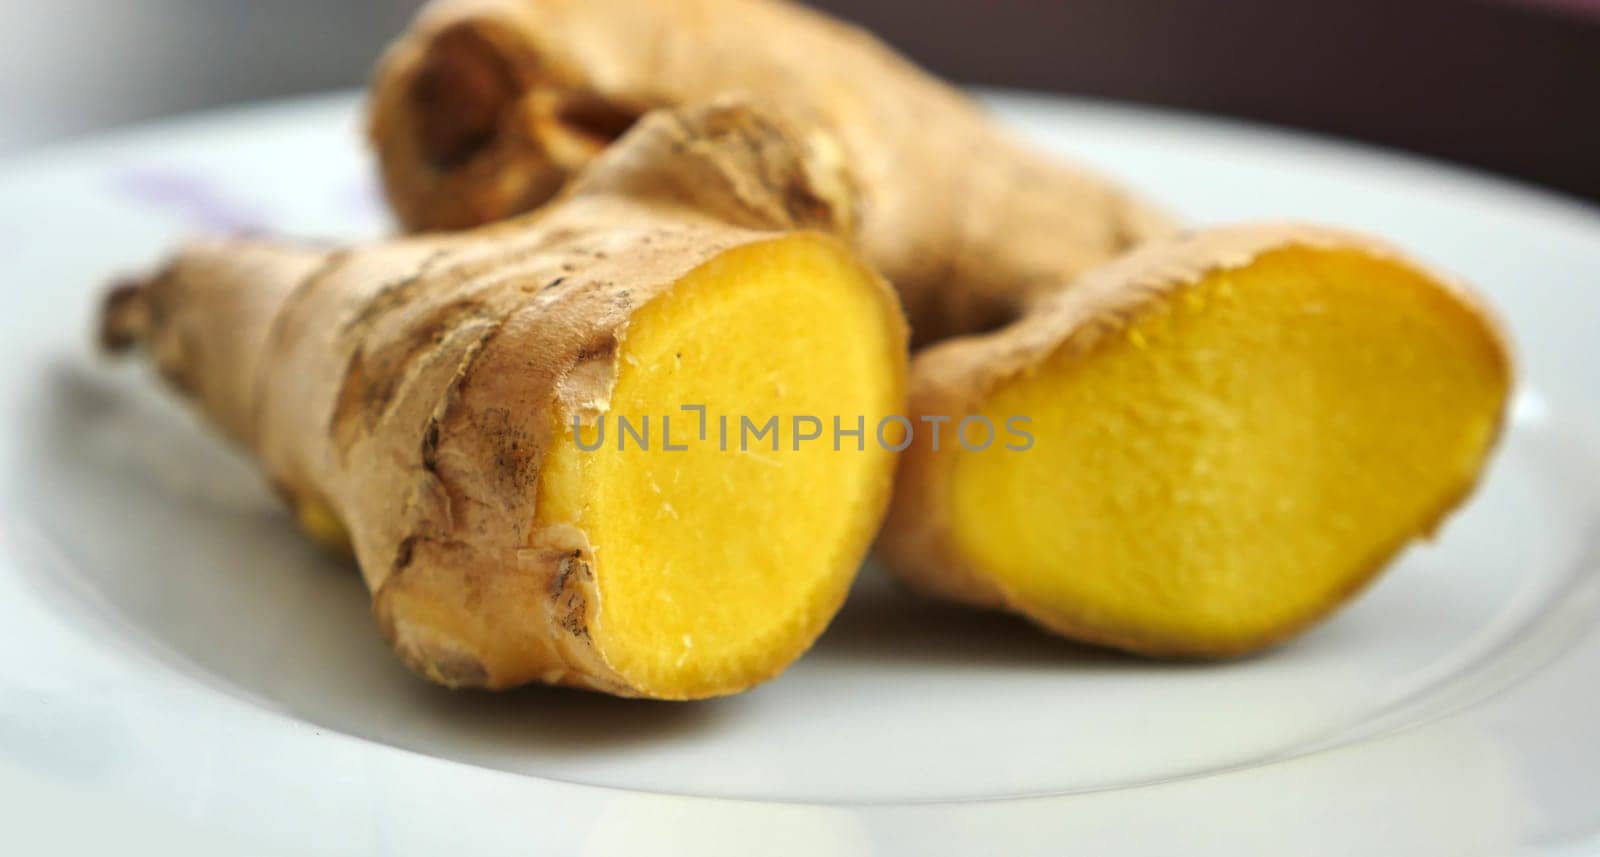 natural antibiotic fresh ginger tuber,